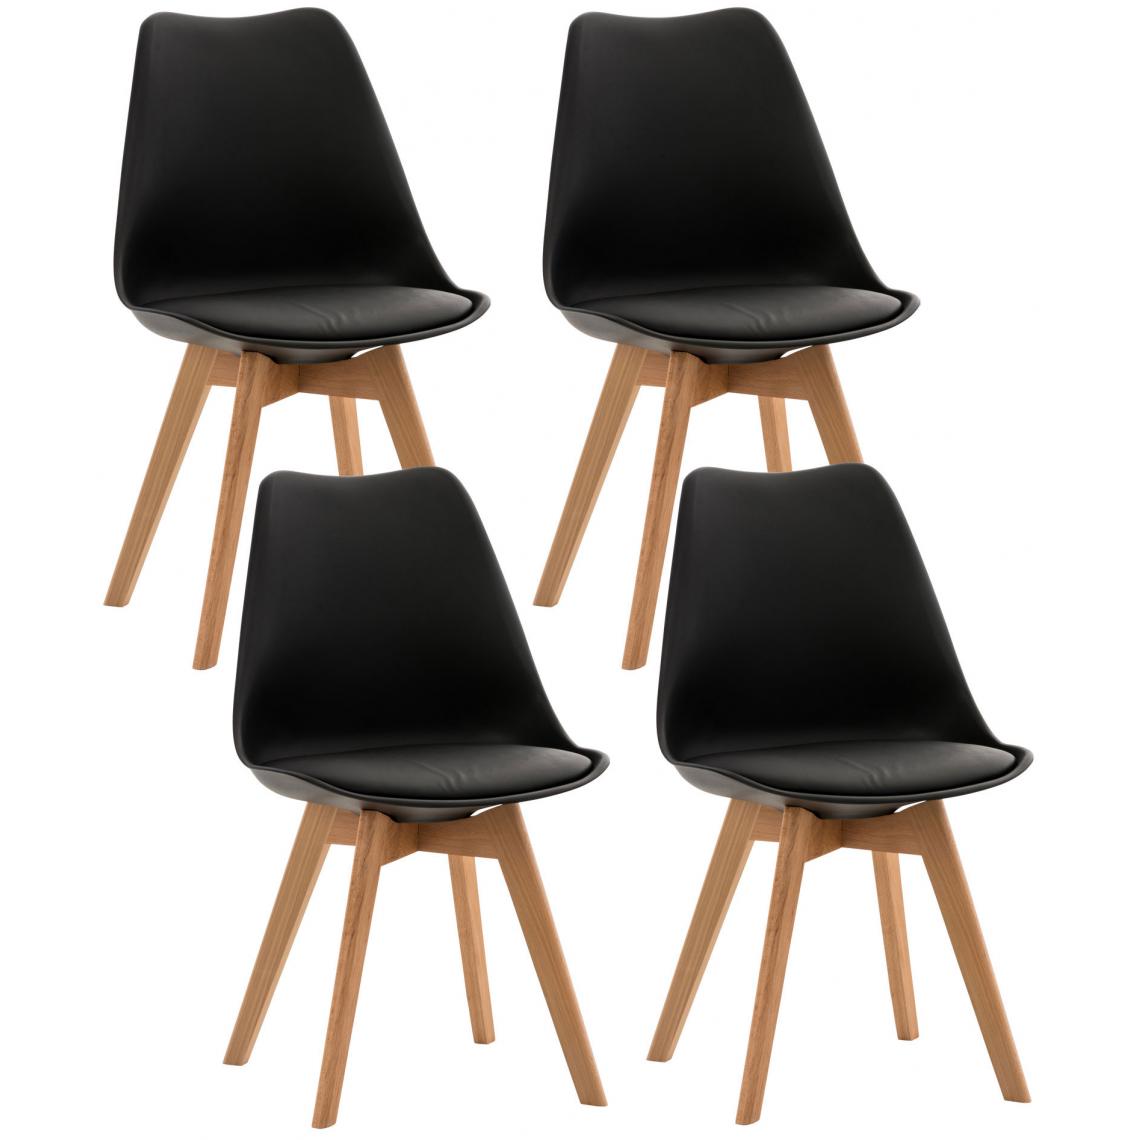 Icaverne - Splendide Lot de 4 chaises selection Oulan-Bator couleur noir - Tabourets